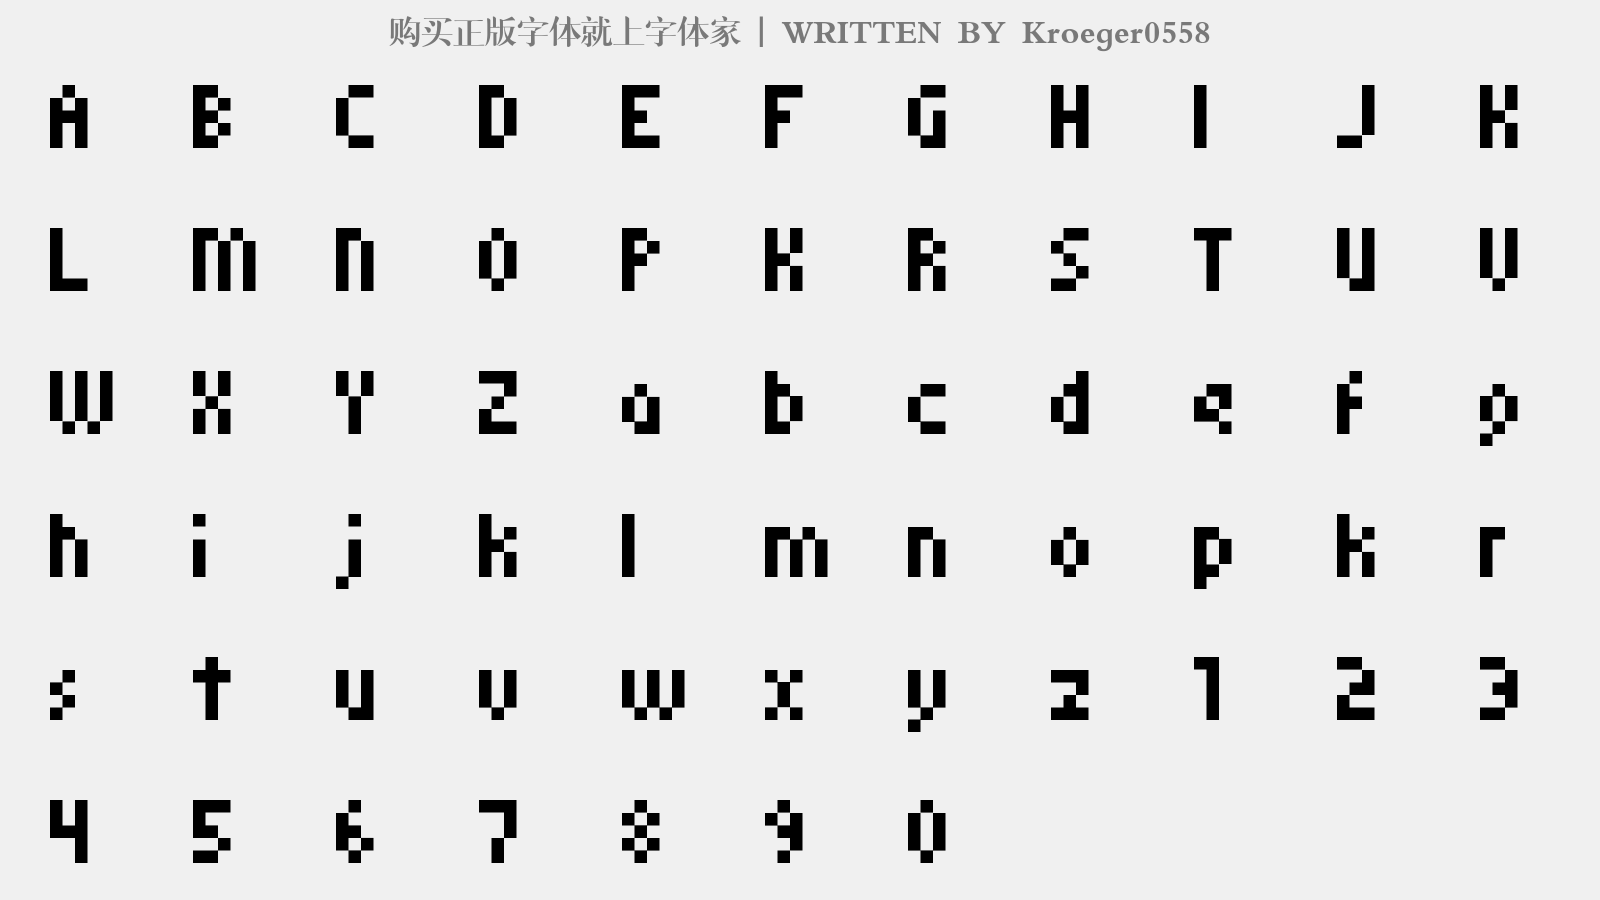 Kroeger0558 - 大写字母/小写字母/数字